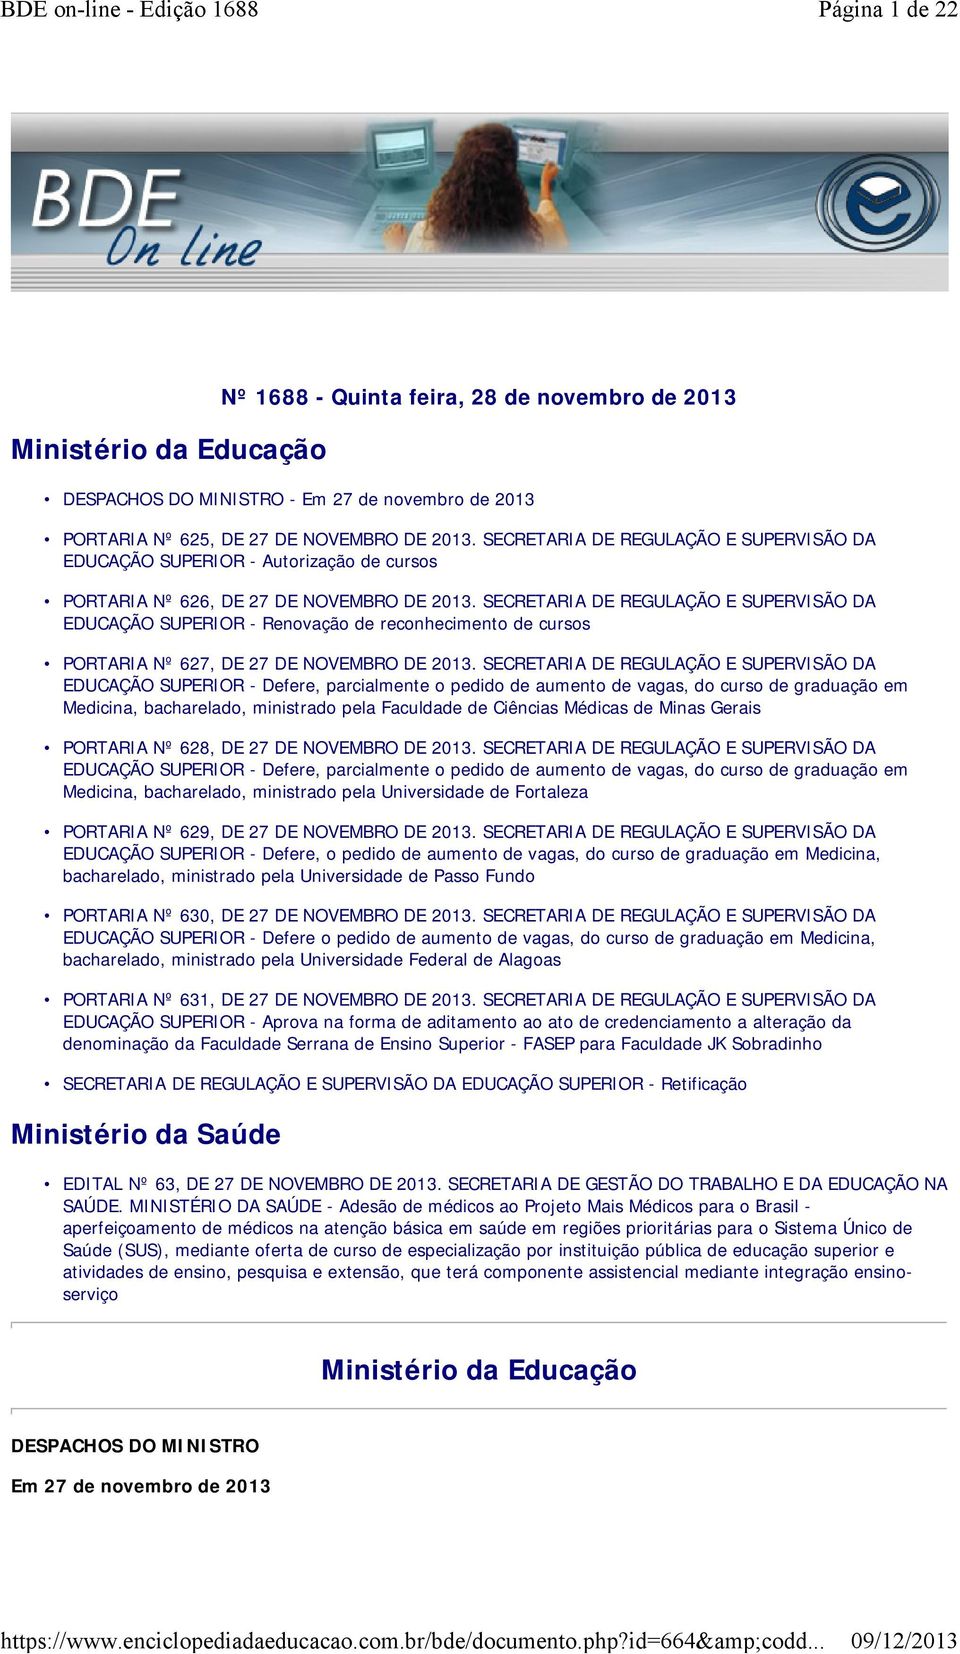 SECRETARIA DE REGULAÇÃO E SUPERVISÃO DA EDUCAÇÃO SUPERIOR - Renovação de reconhecimento de cursos PORTARIA Nº 627, DE 27 DE NOVEMBRO DE 2013.